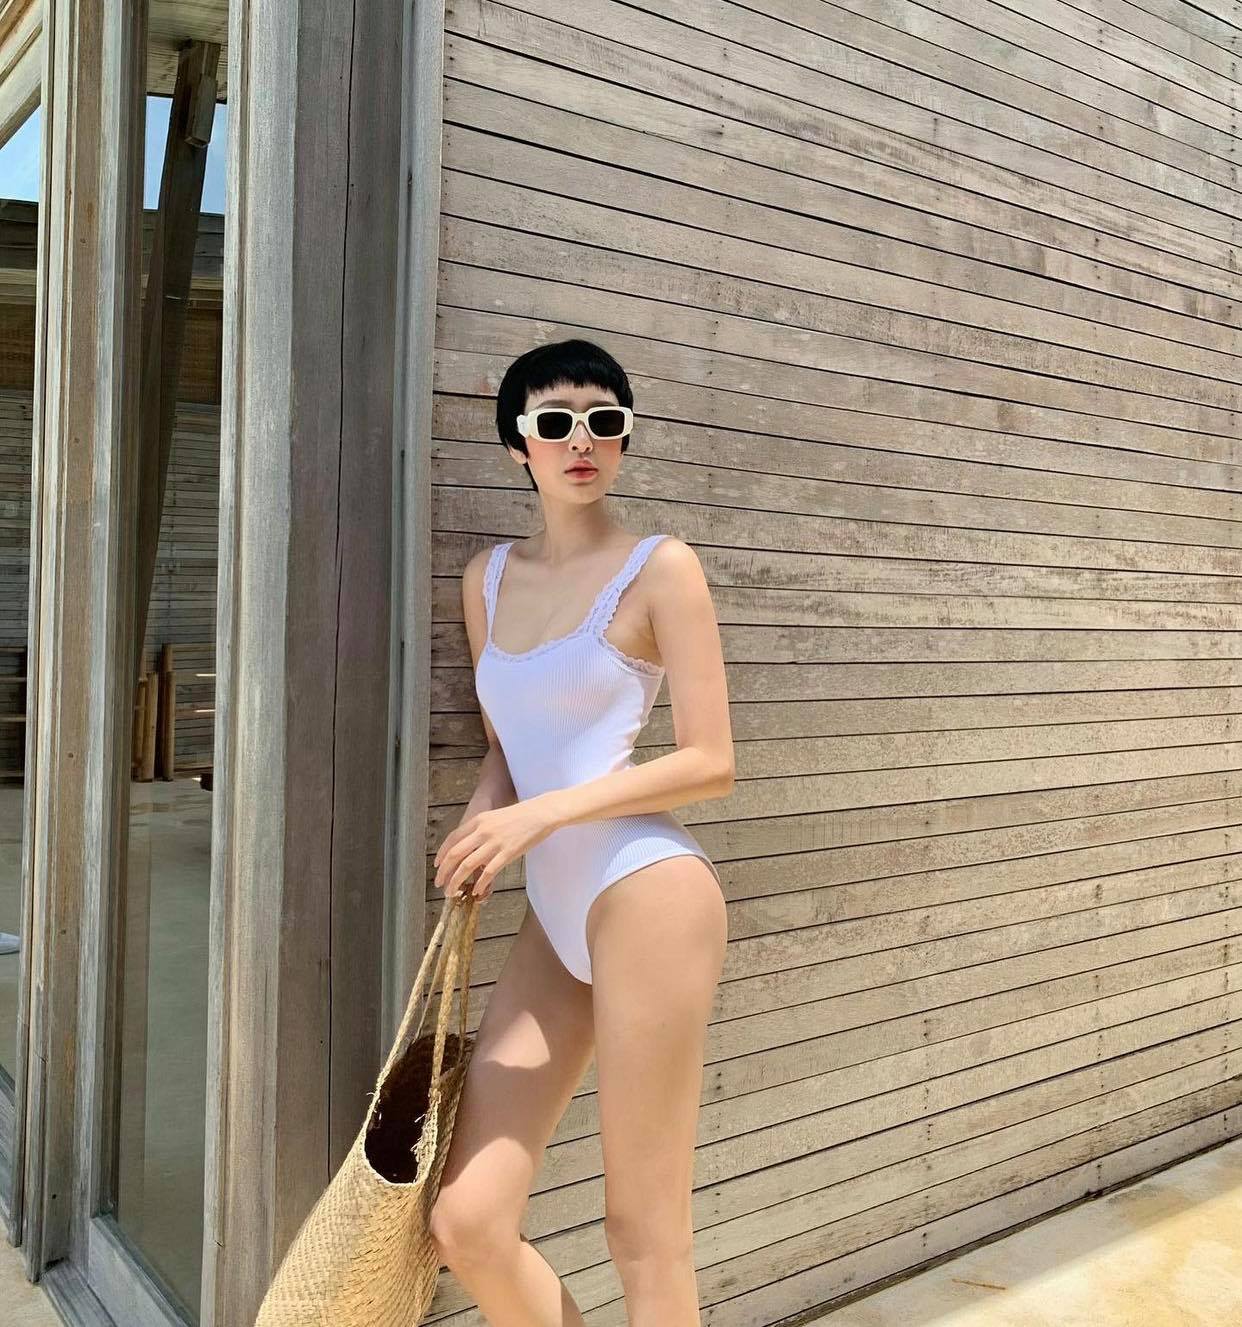 Hình ảnh diện bikini 1 mảnh khoe body quyến rũ được Hiền Hồ đăng tải trên trang cá nhân nhanh chóng thu hút nhiều lượt yêu thích của cộng đồng mạng.